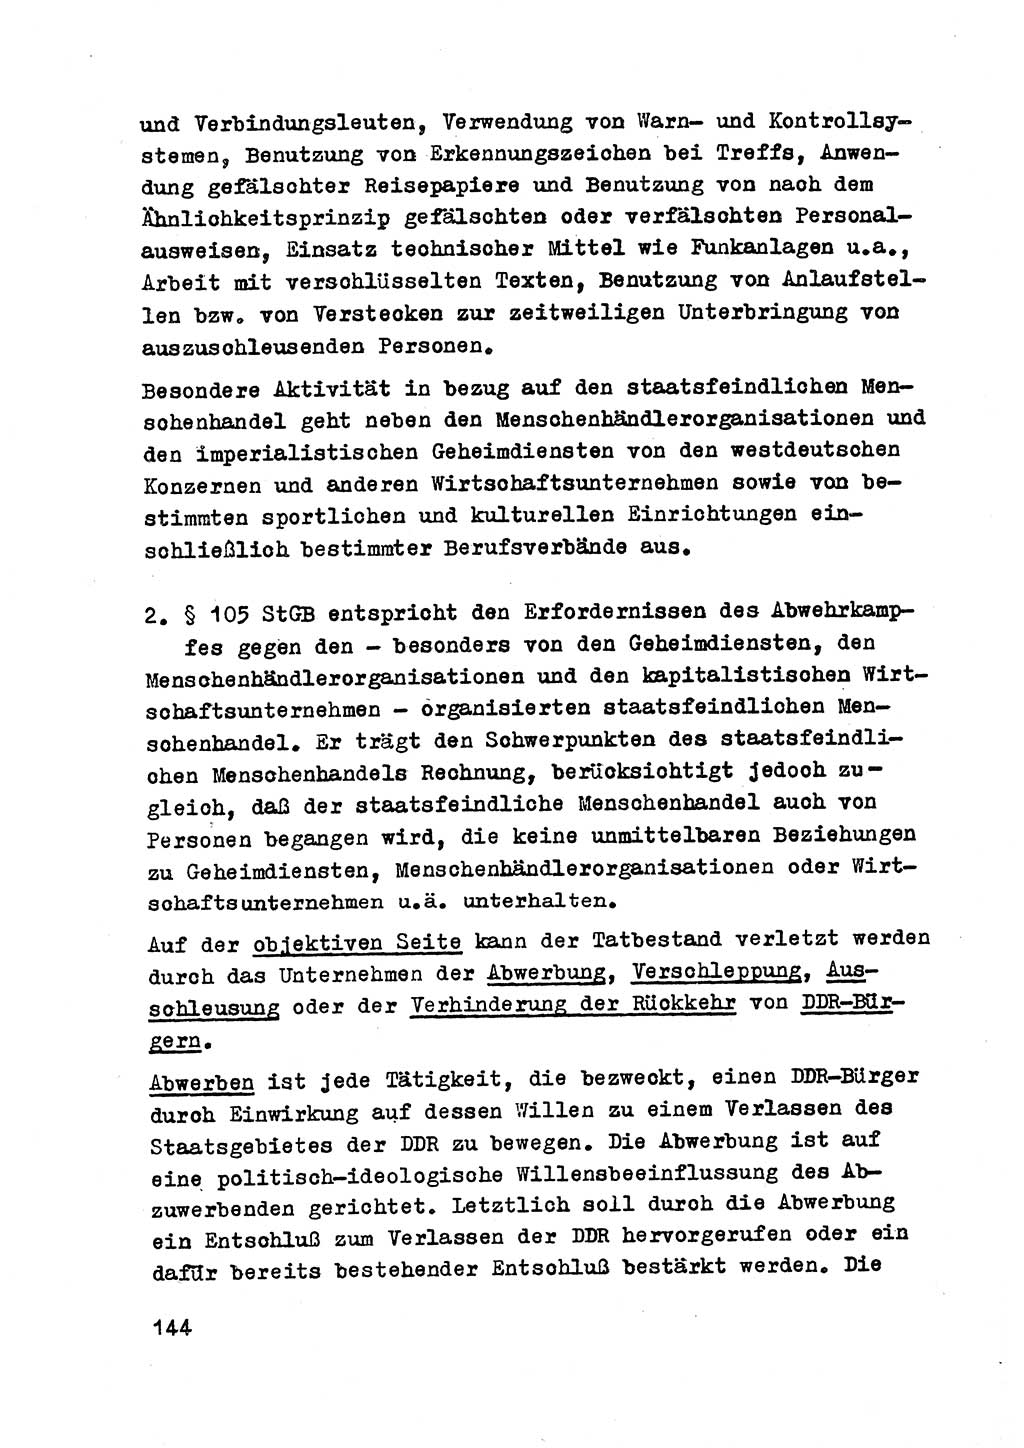 Strafrecht der DDR (Deutsche Demokratische Republik), Besonderer Teil, Lehrmaterial, Heft 2 1969, Seite 144 (Strafr. DDR BT Lehrmat. H. 2 1969, S. 144)